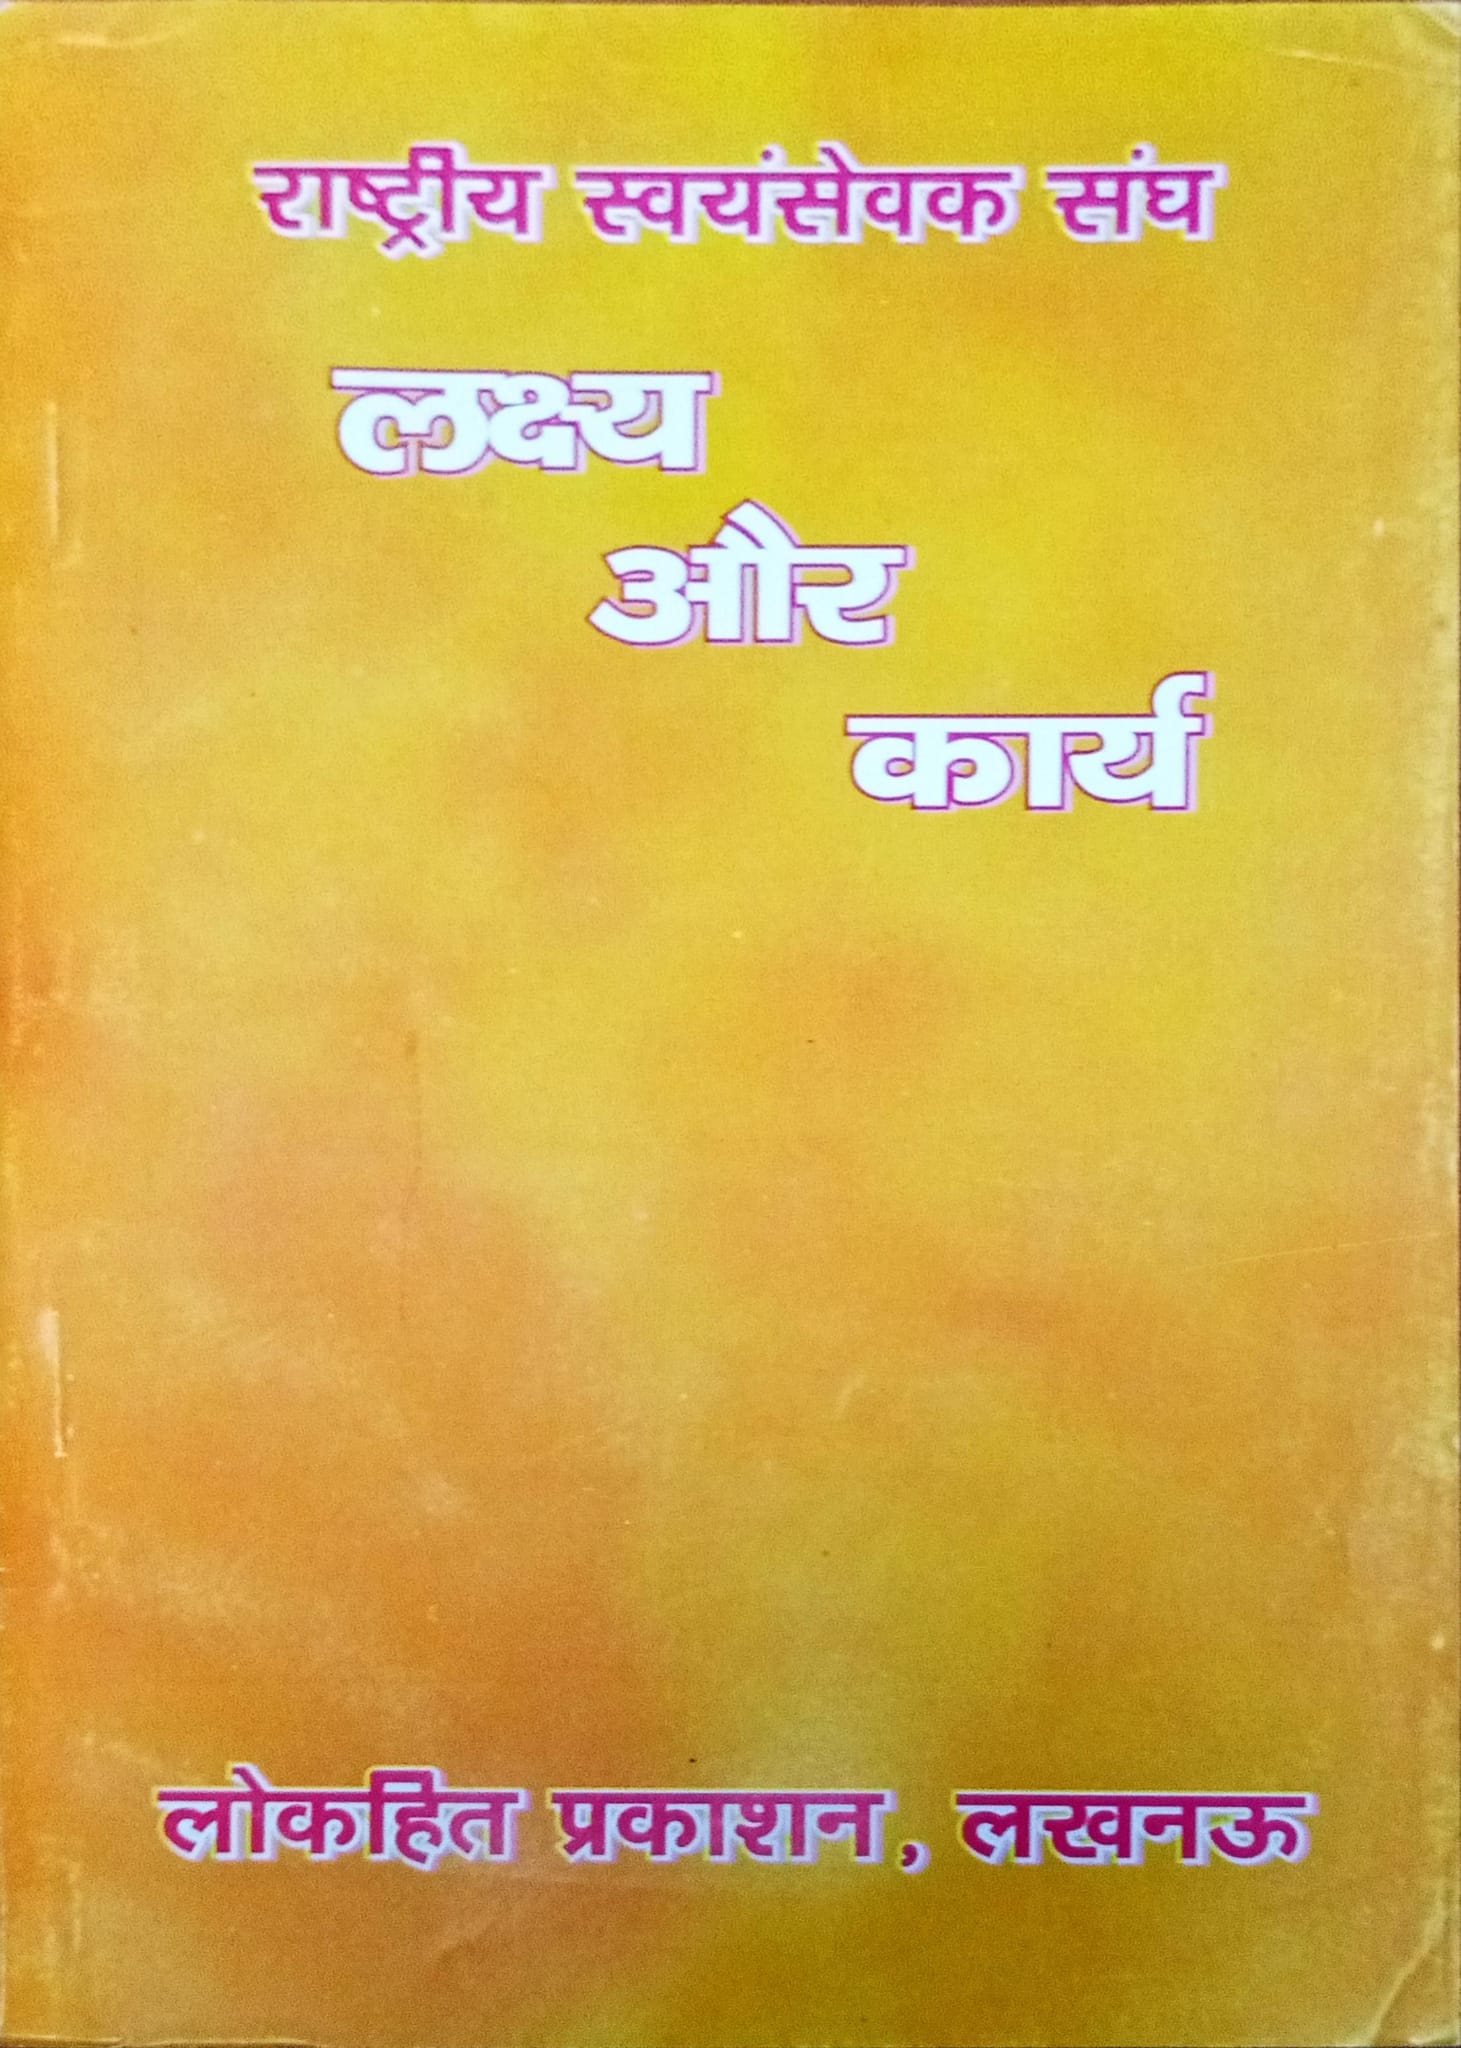 Rashtriya swayamsevak Sangh - lakshya or Karya - In Hindi